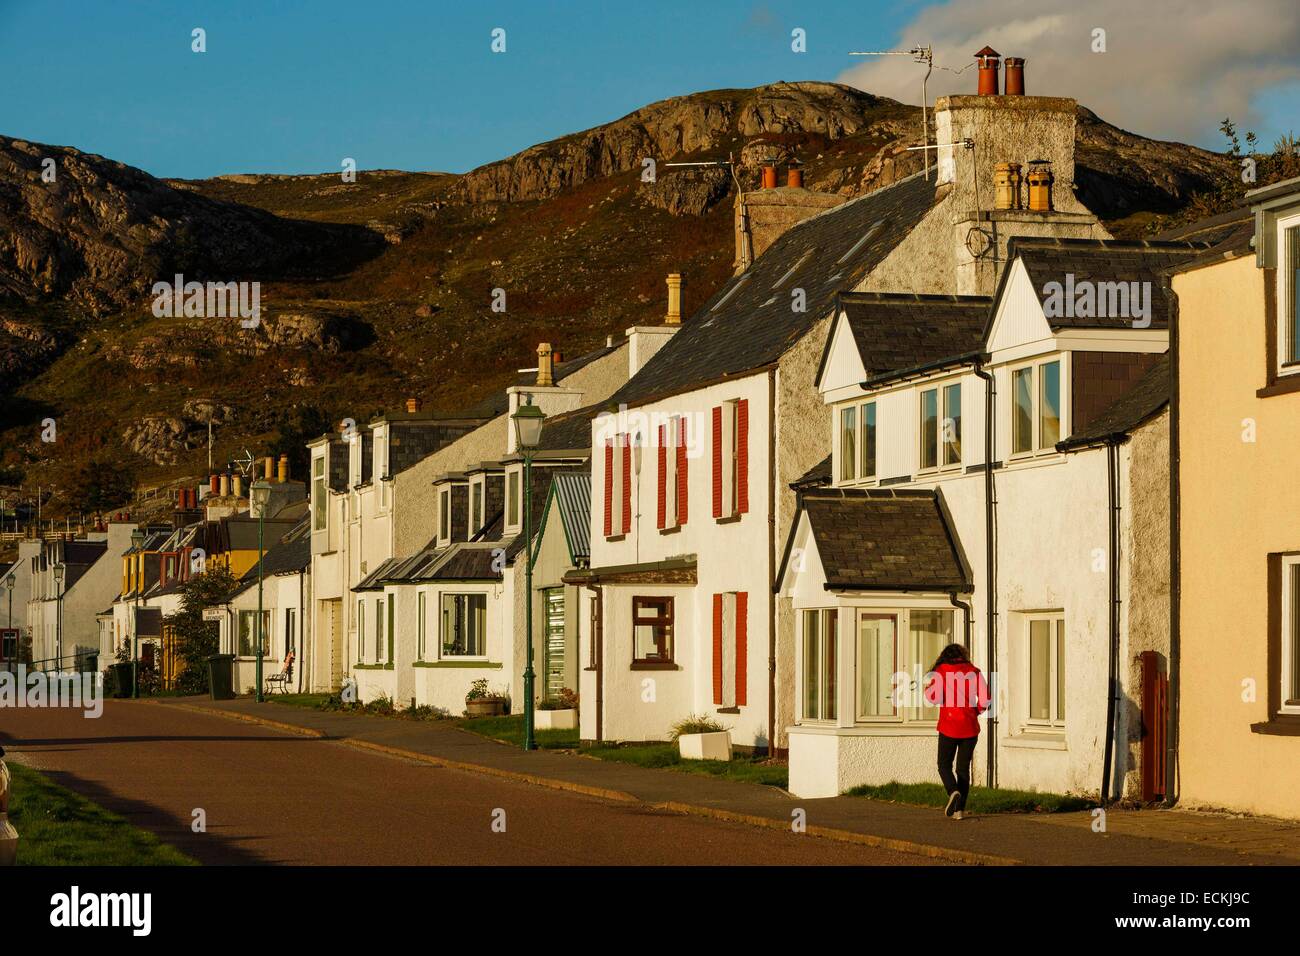 Reino Unido, Escocia, Wester Ross, Shieldaig, vista horizontal de la calle principal de un pueblo de pescadores caminar solamente una mujer en rojo en otoño Foto de stock